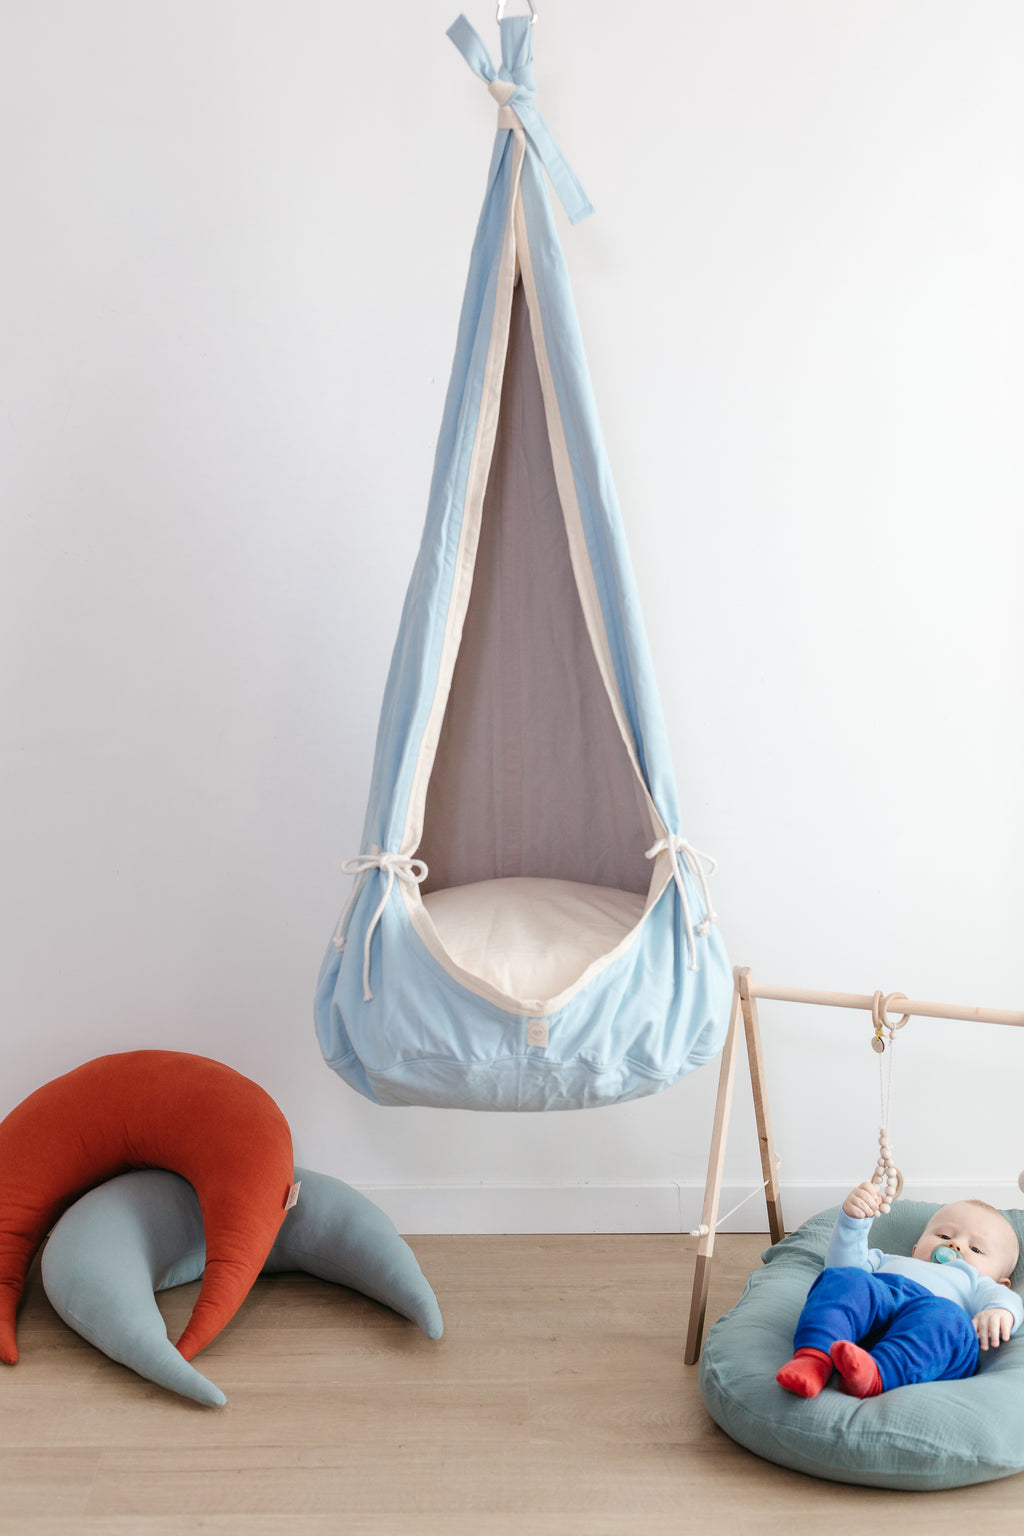 Cocoon WOOL Hang Chair INDOOR